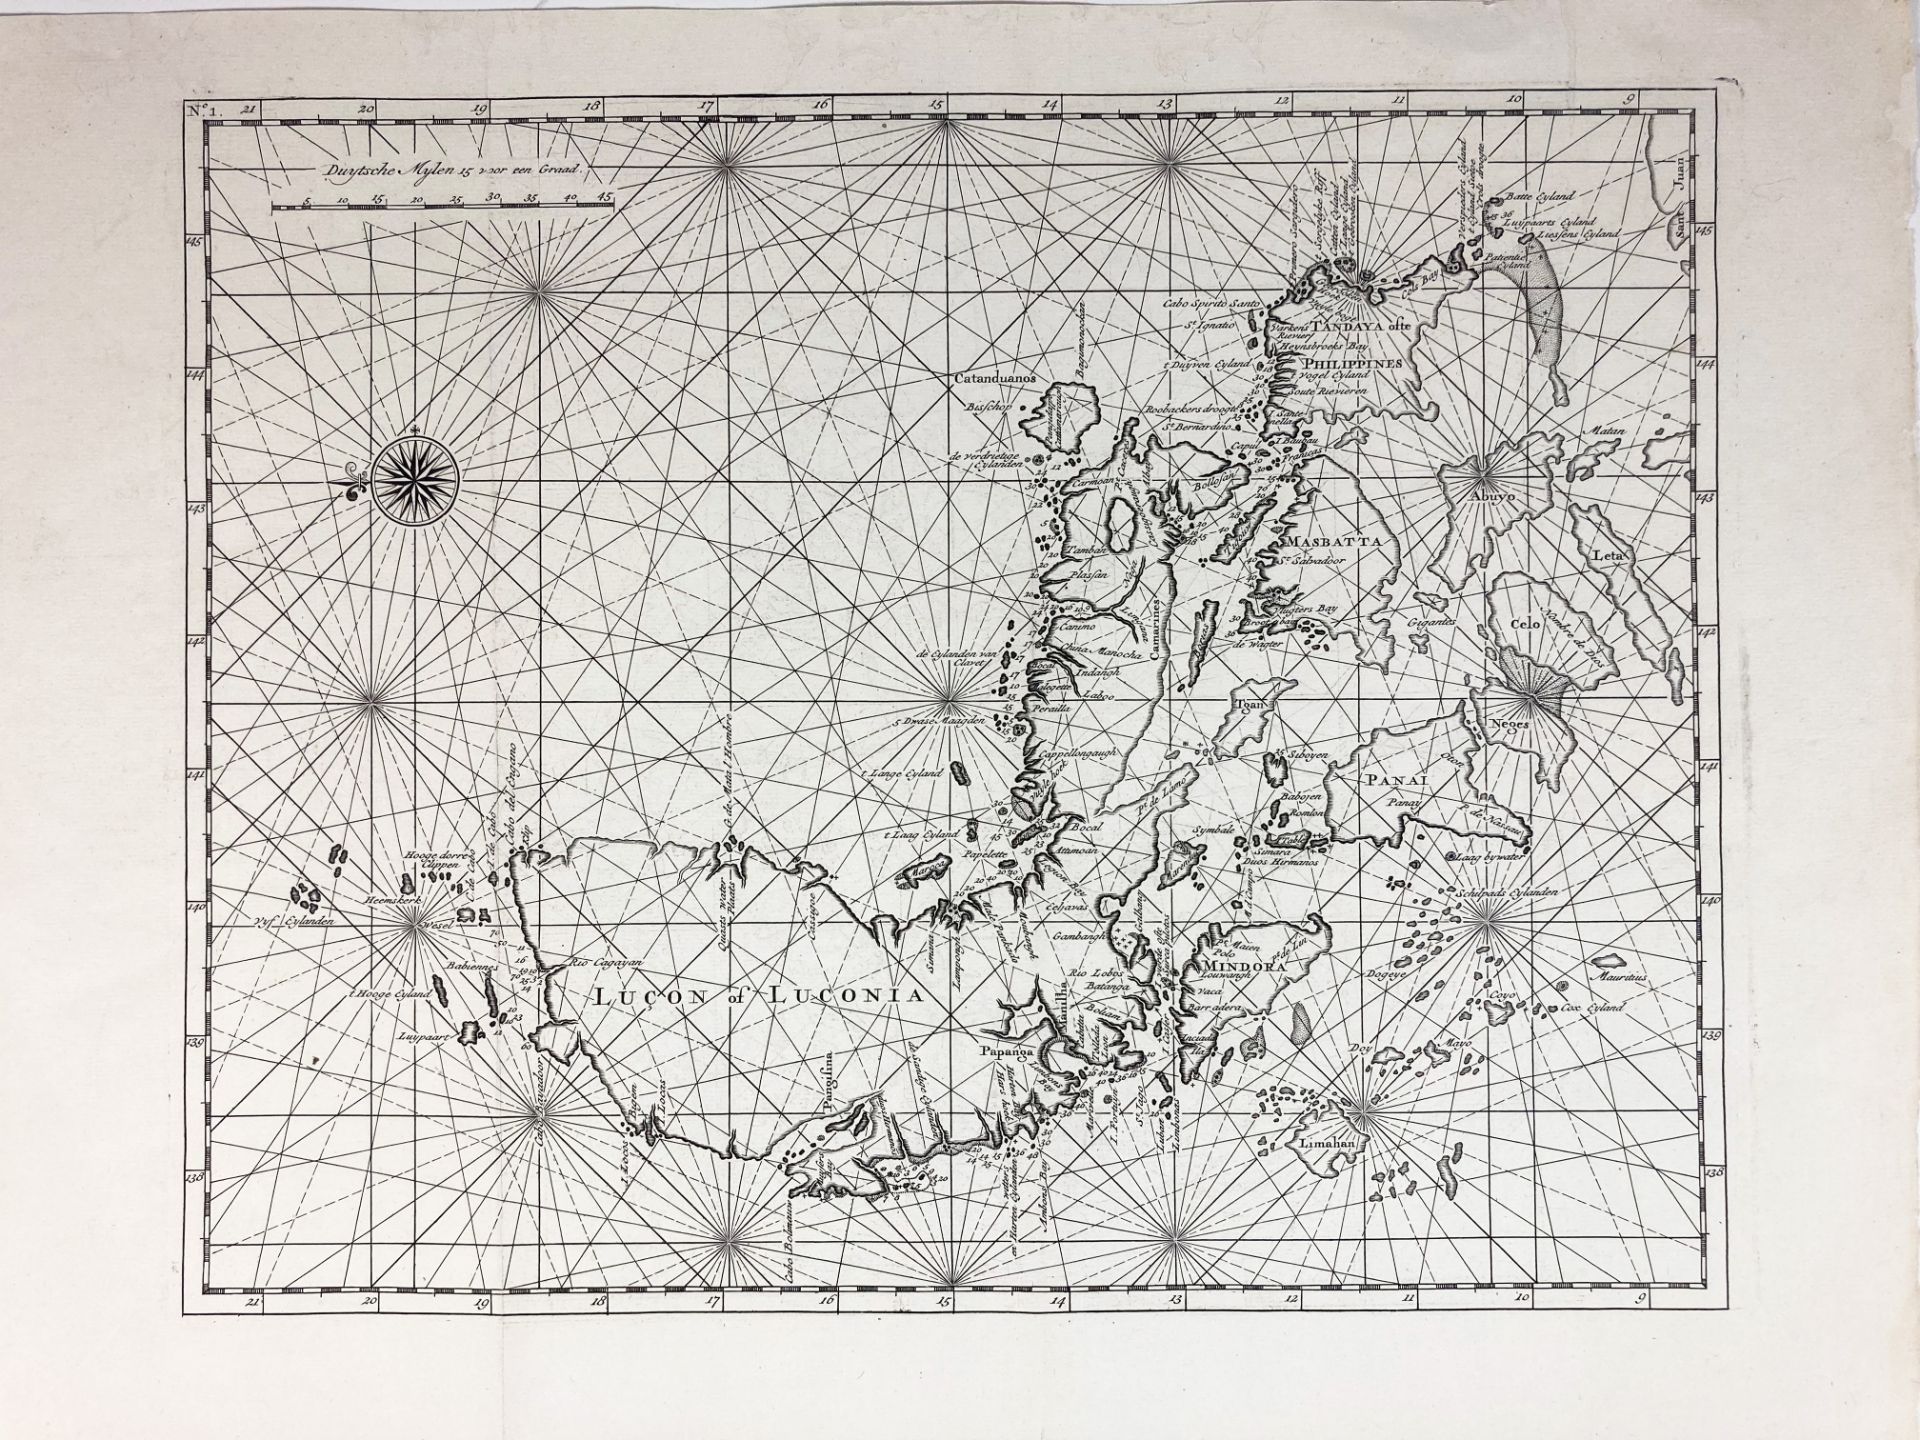 ASIA -- PHILIPPINES -- "LUÇON of Luconia". (Dordrecht, c. 1724). Plain engr. chart of